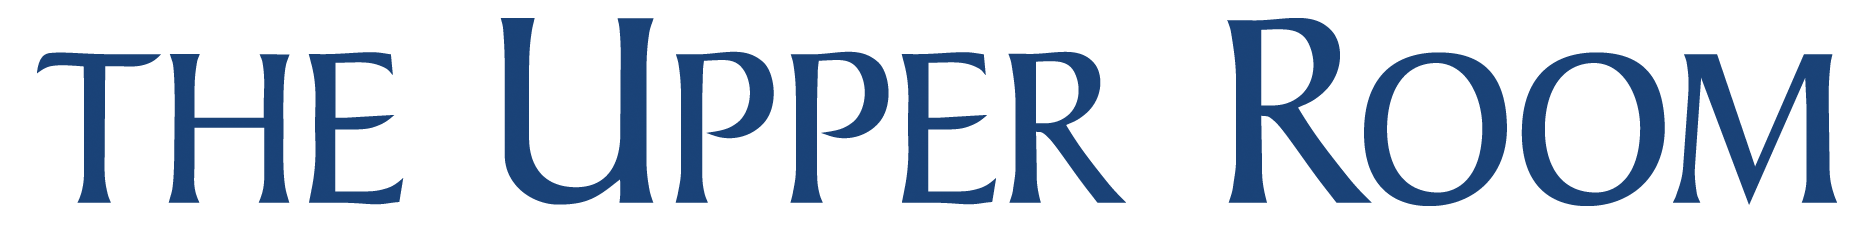 upperroom-header-logo